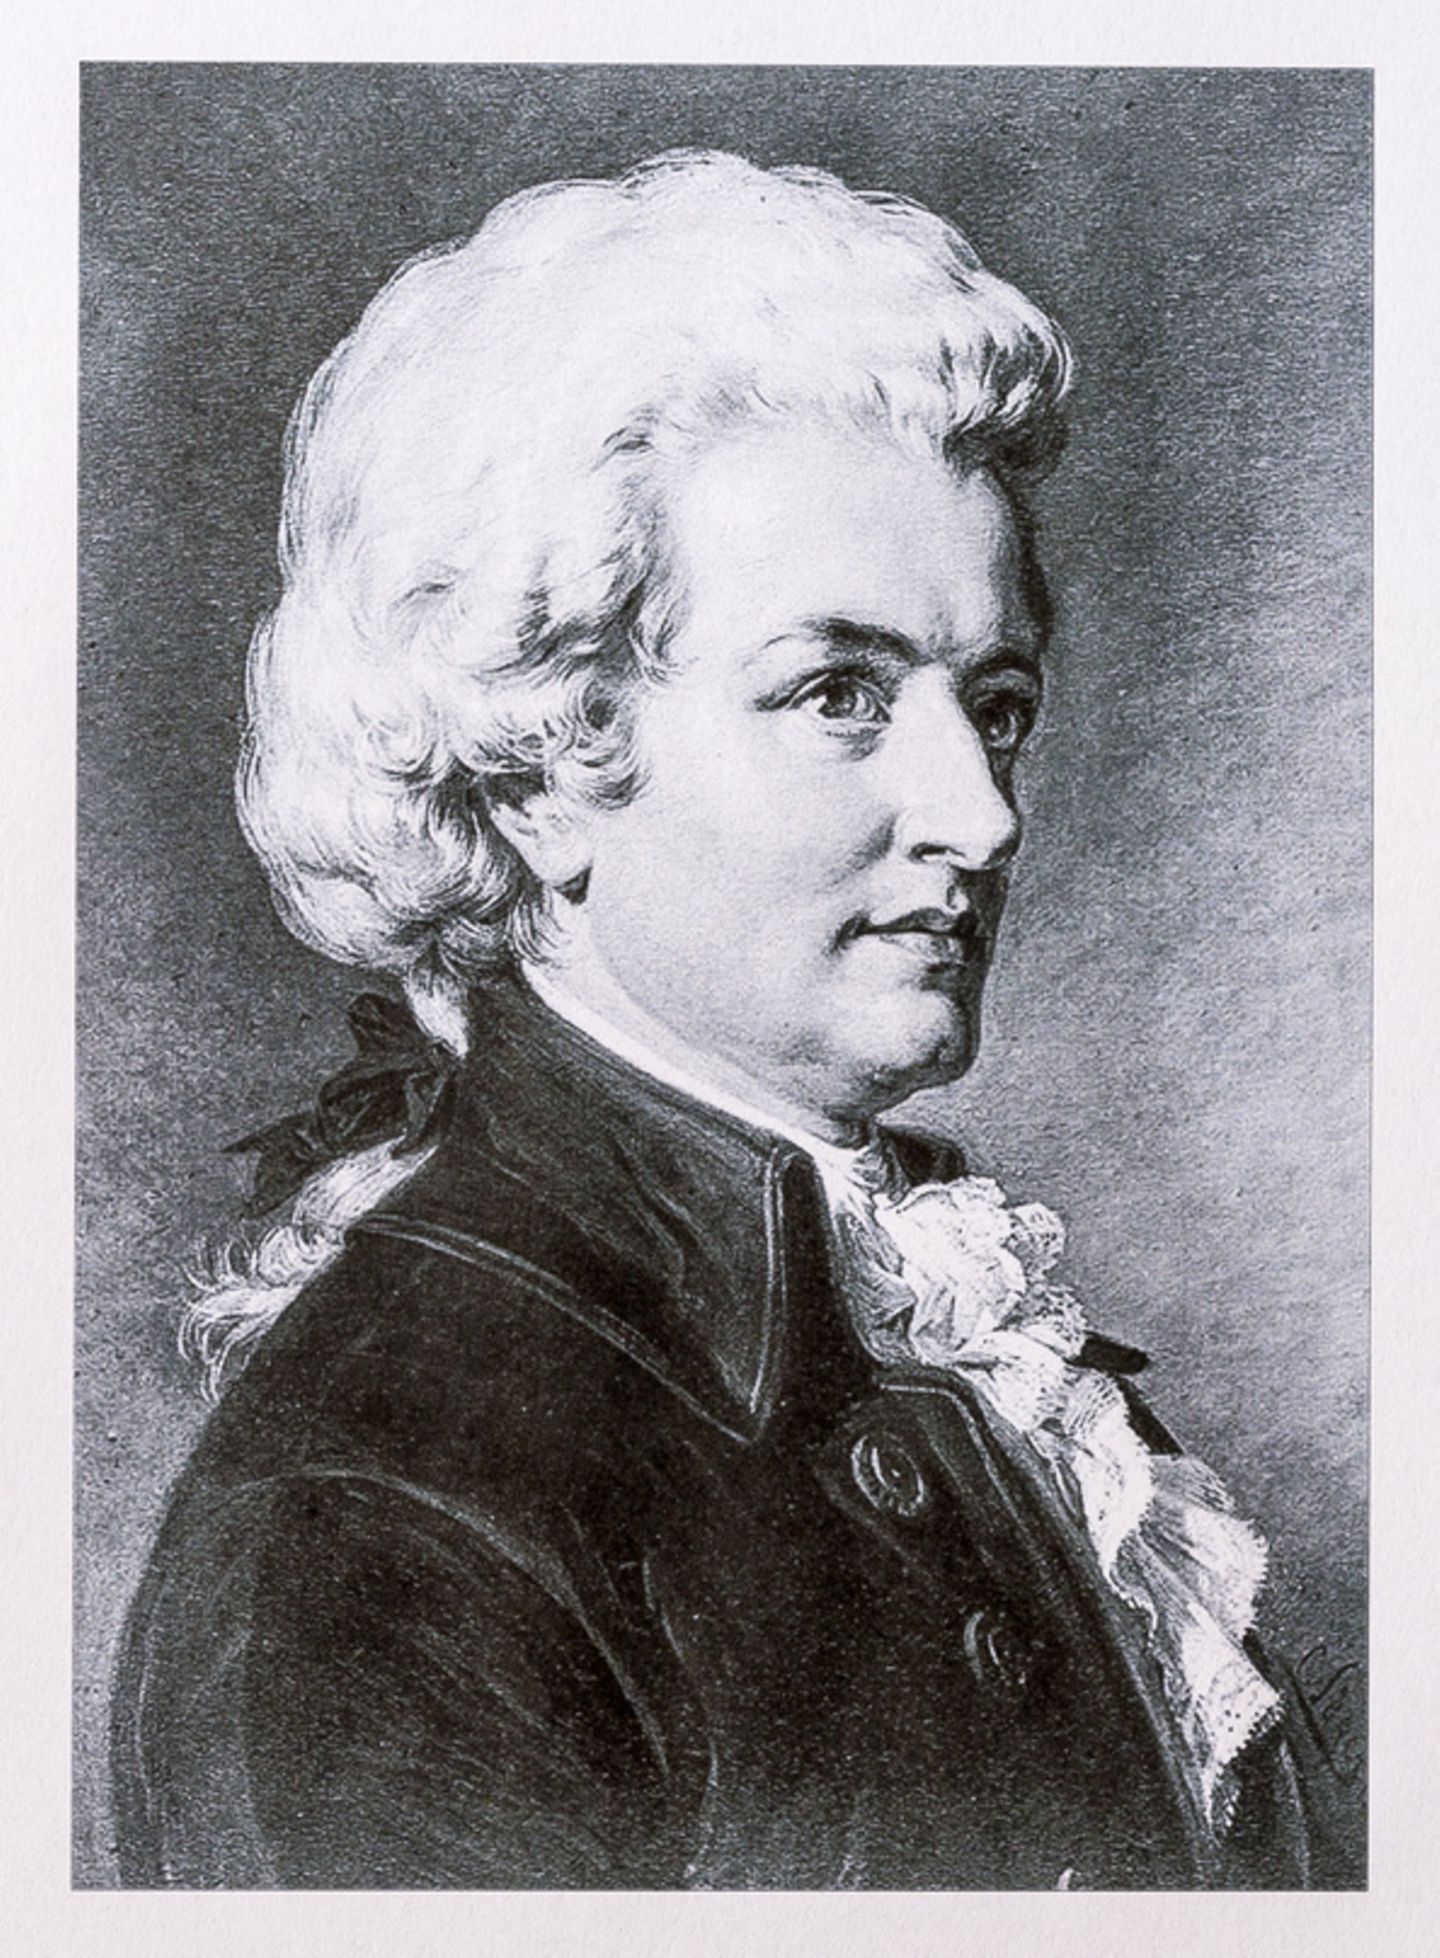 Woflgang Amadeus Mozart